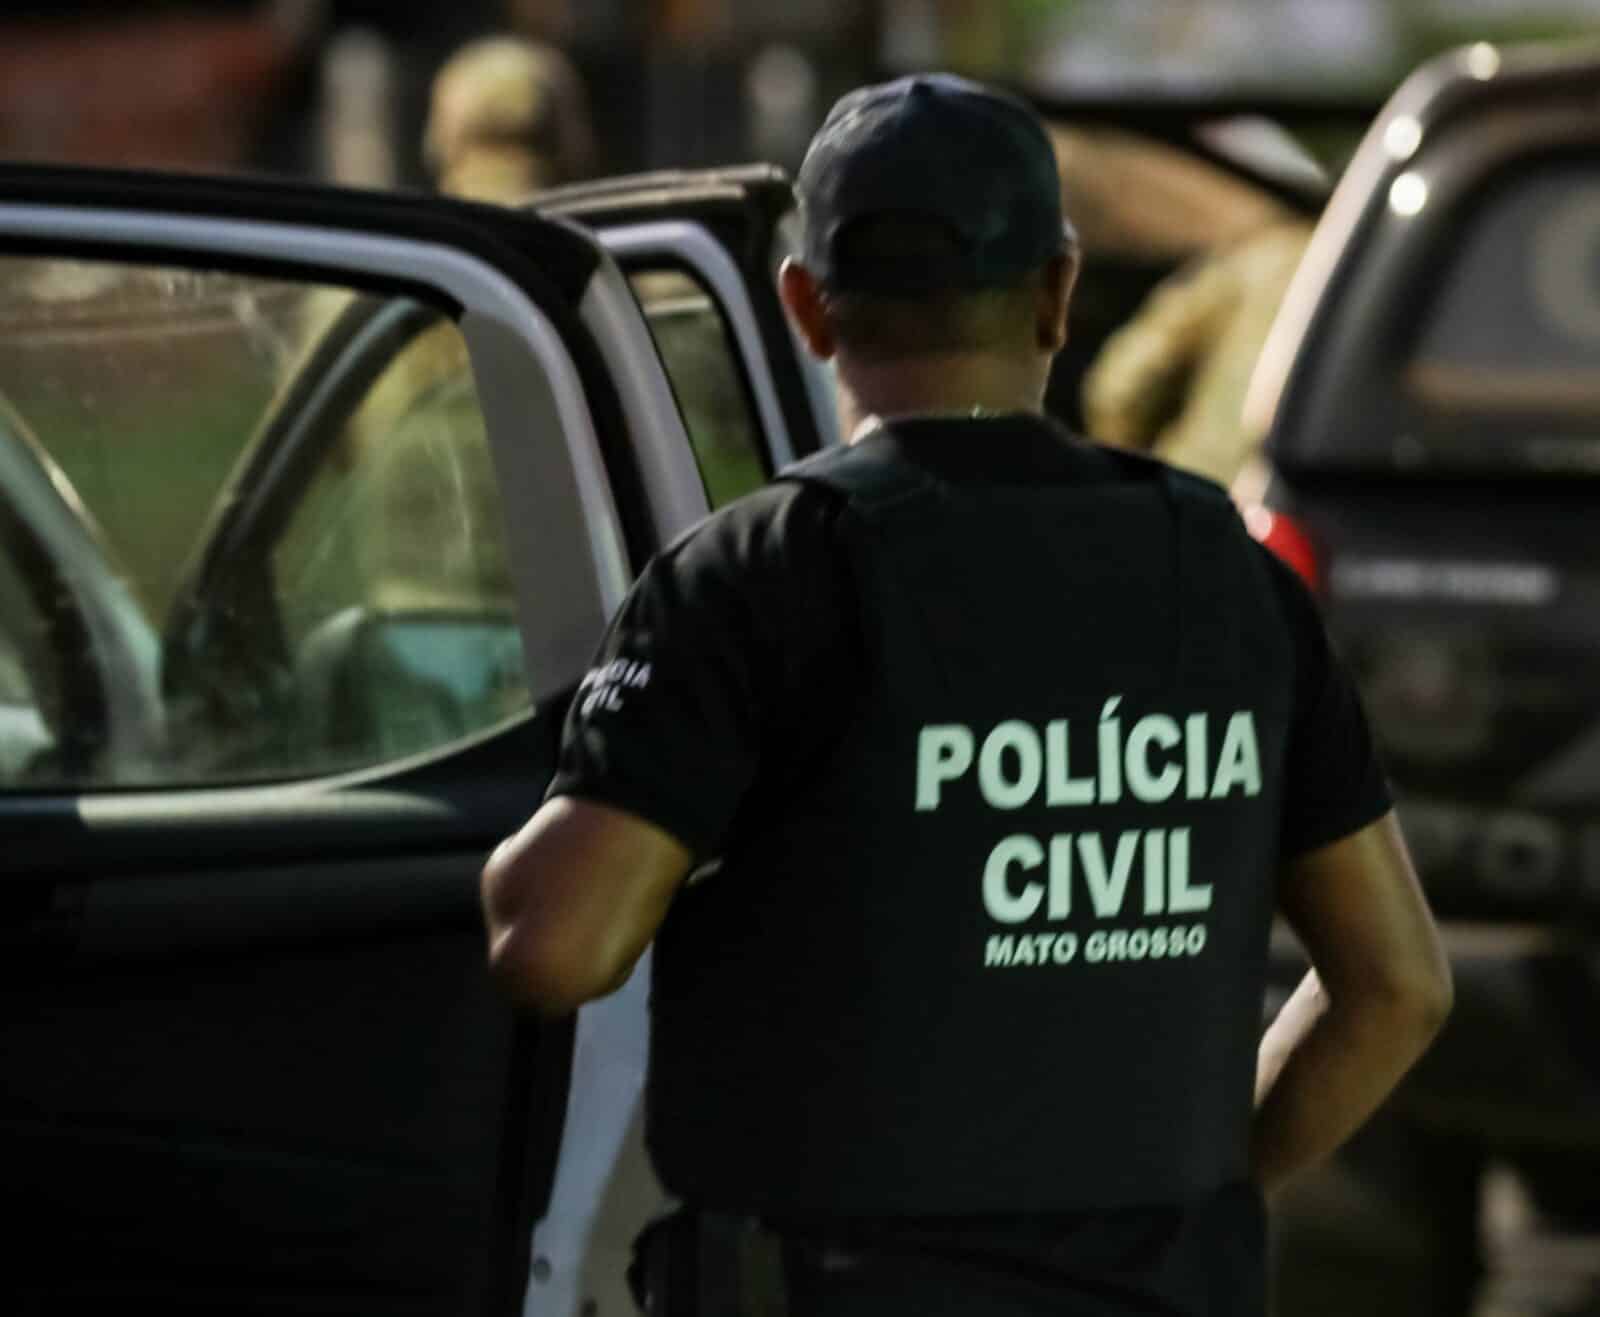 Policial civil é baleado em ataque em Mato Grosso e suspeitos permanecem foragidos